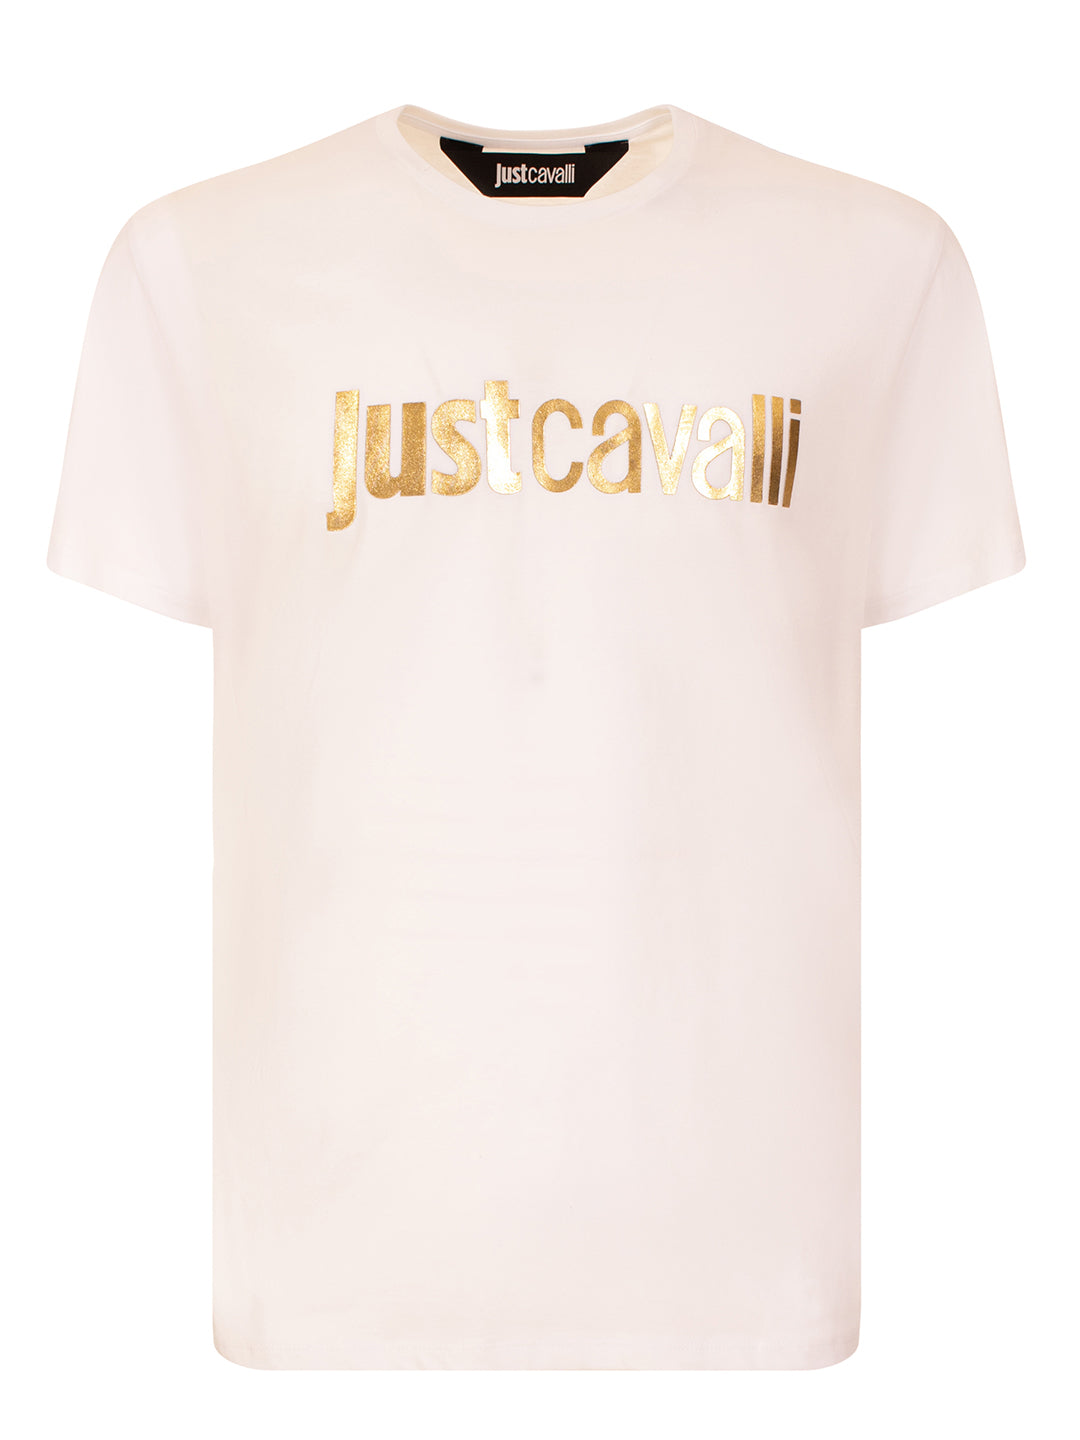 Just Cavalli Men White Printed Round Neck TShirt